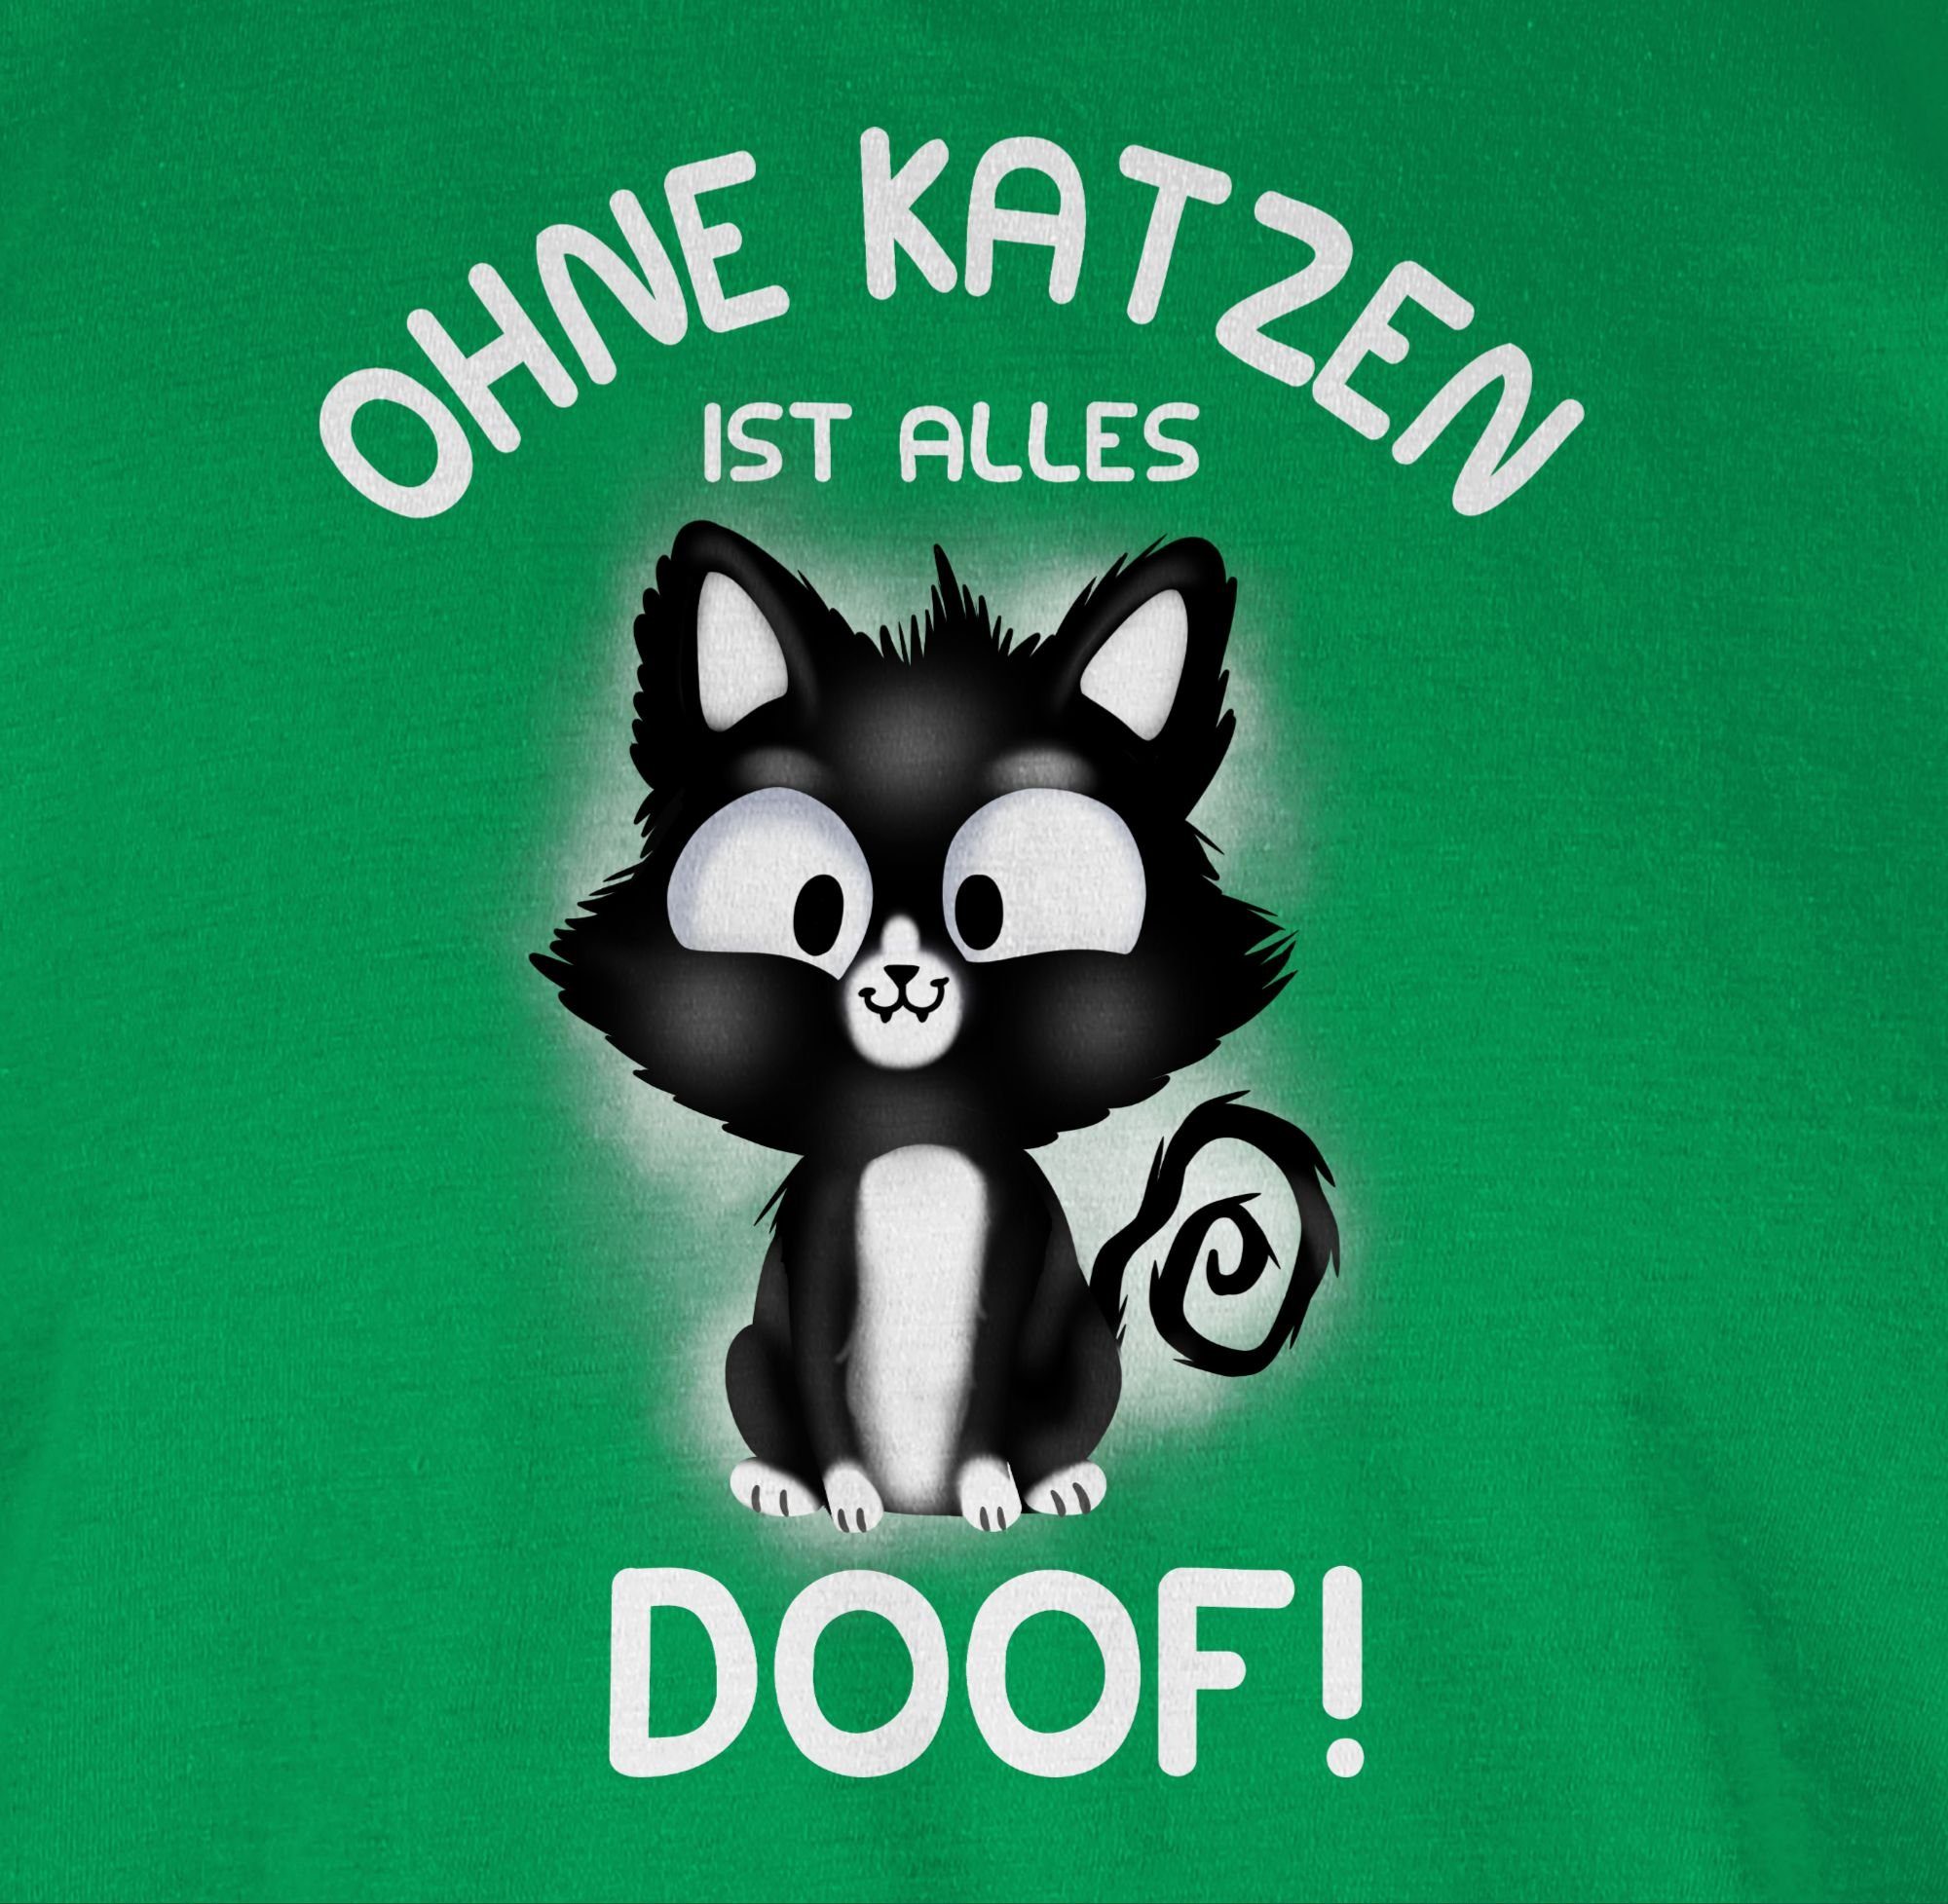 Shirtracer T-Shirt Ohne alles Katzenbesitzer 03 Grün Geschenk Katzen ist doof